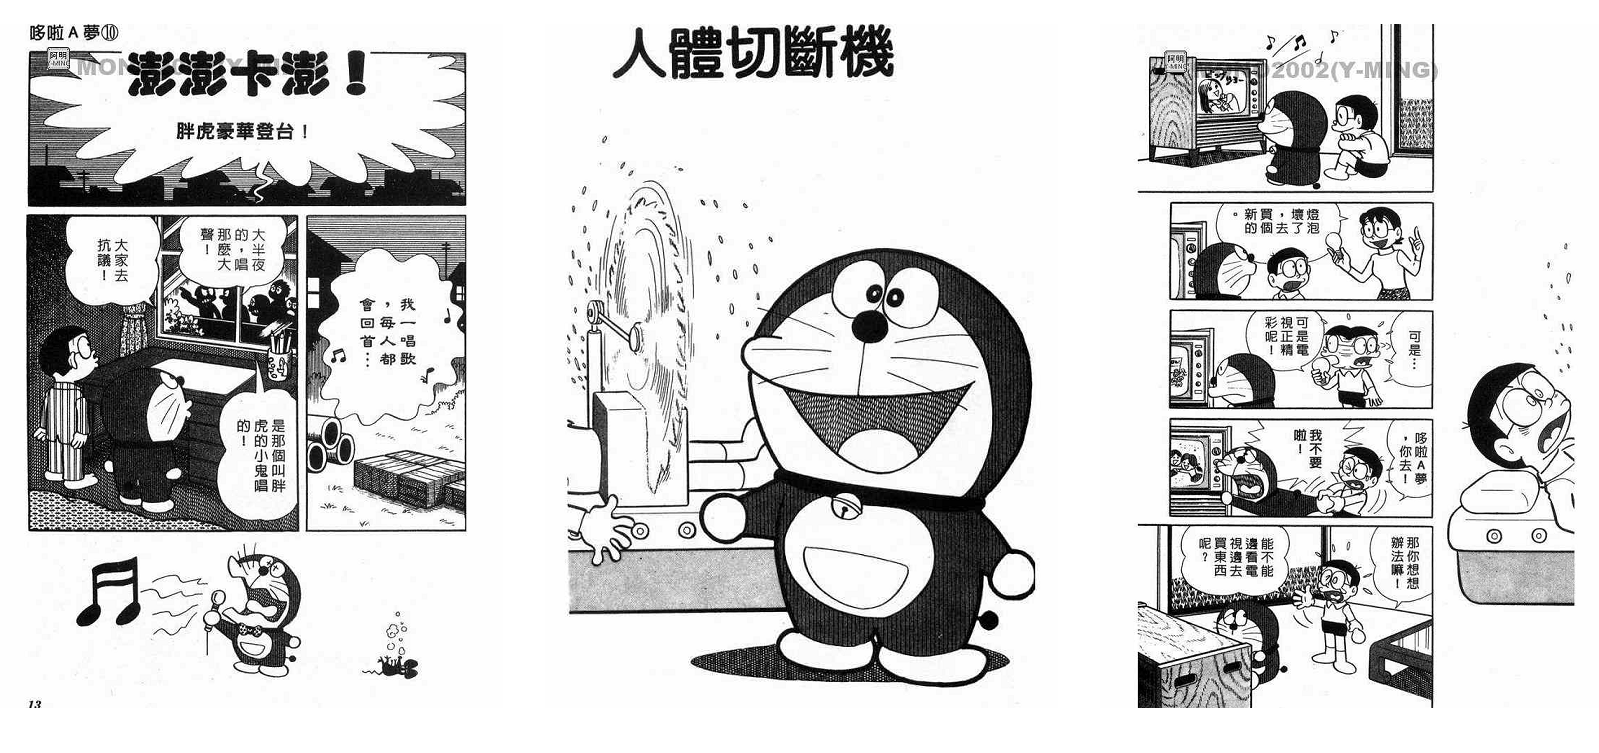 哆啦A梦漫画短篇+长篇合集下载 mobi、jpg格式